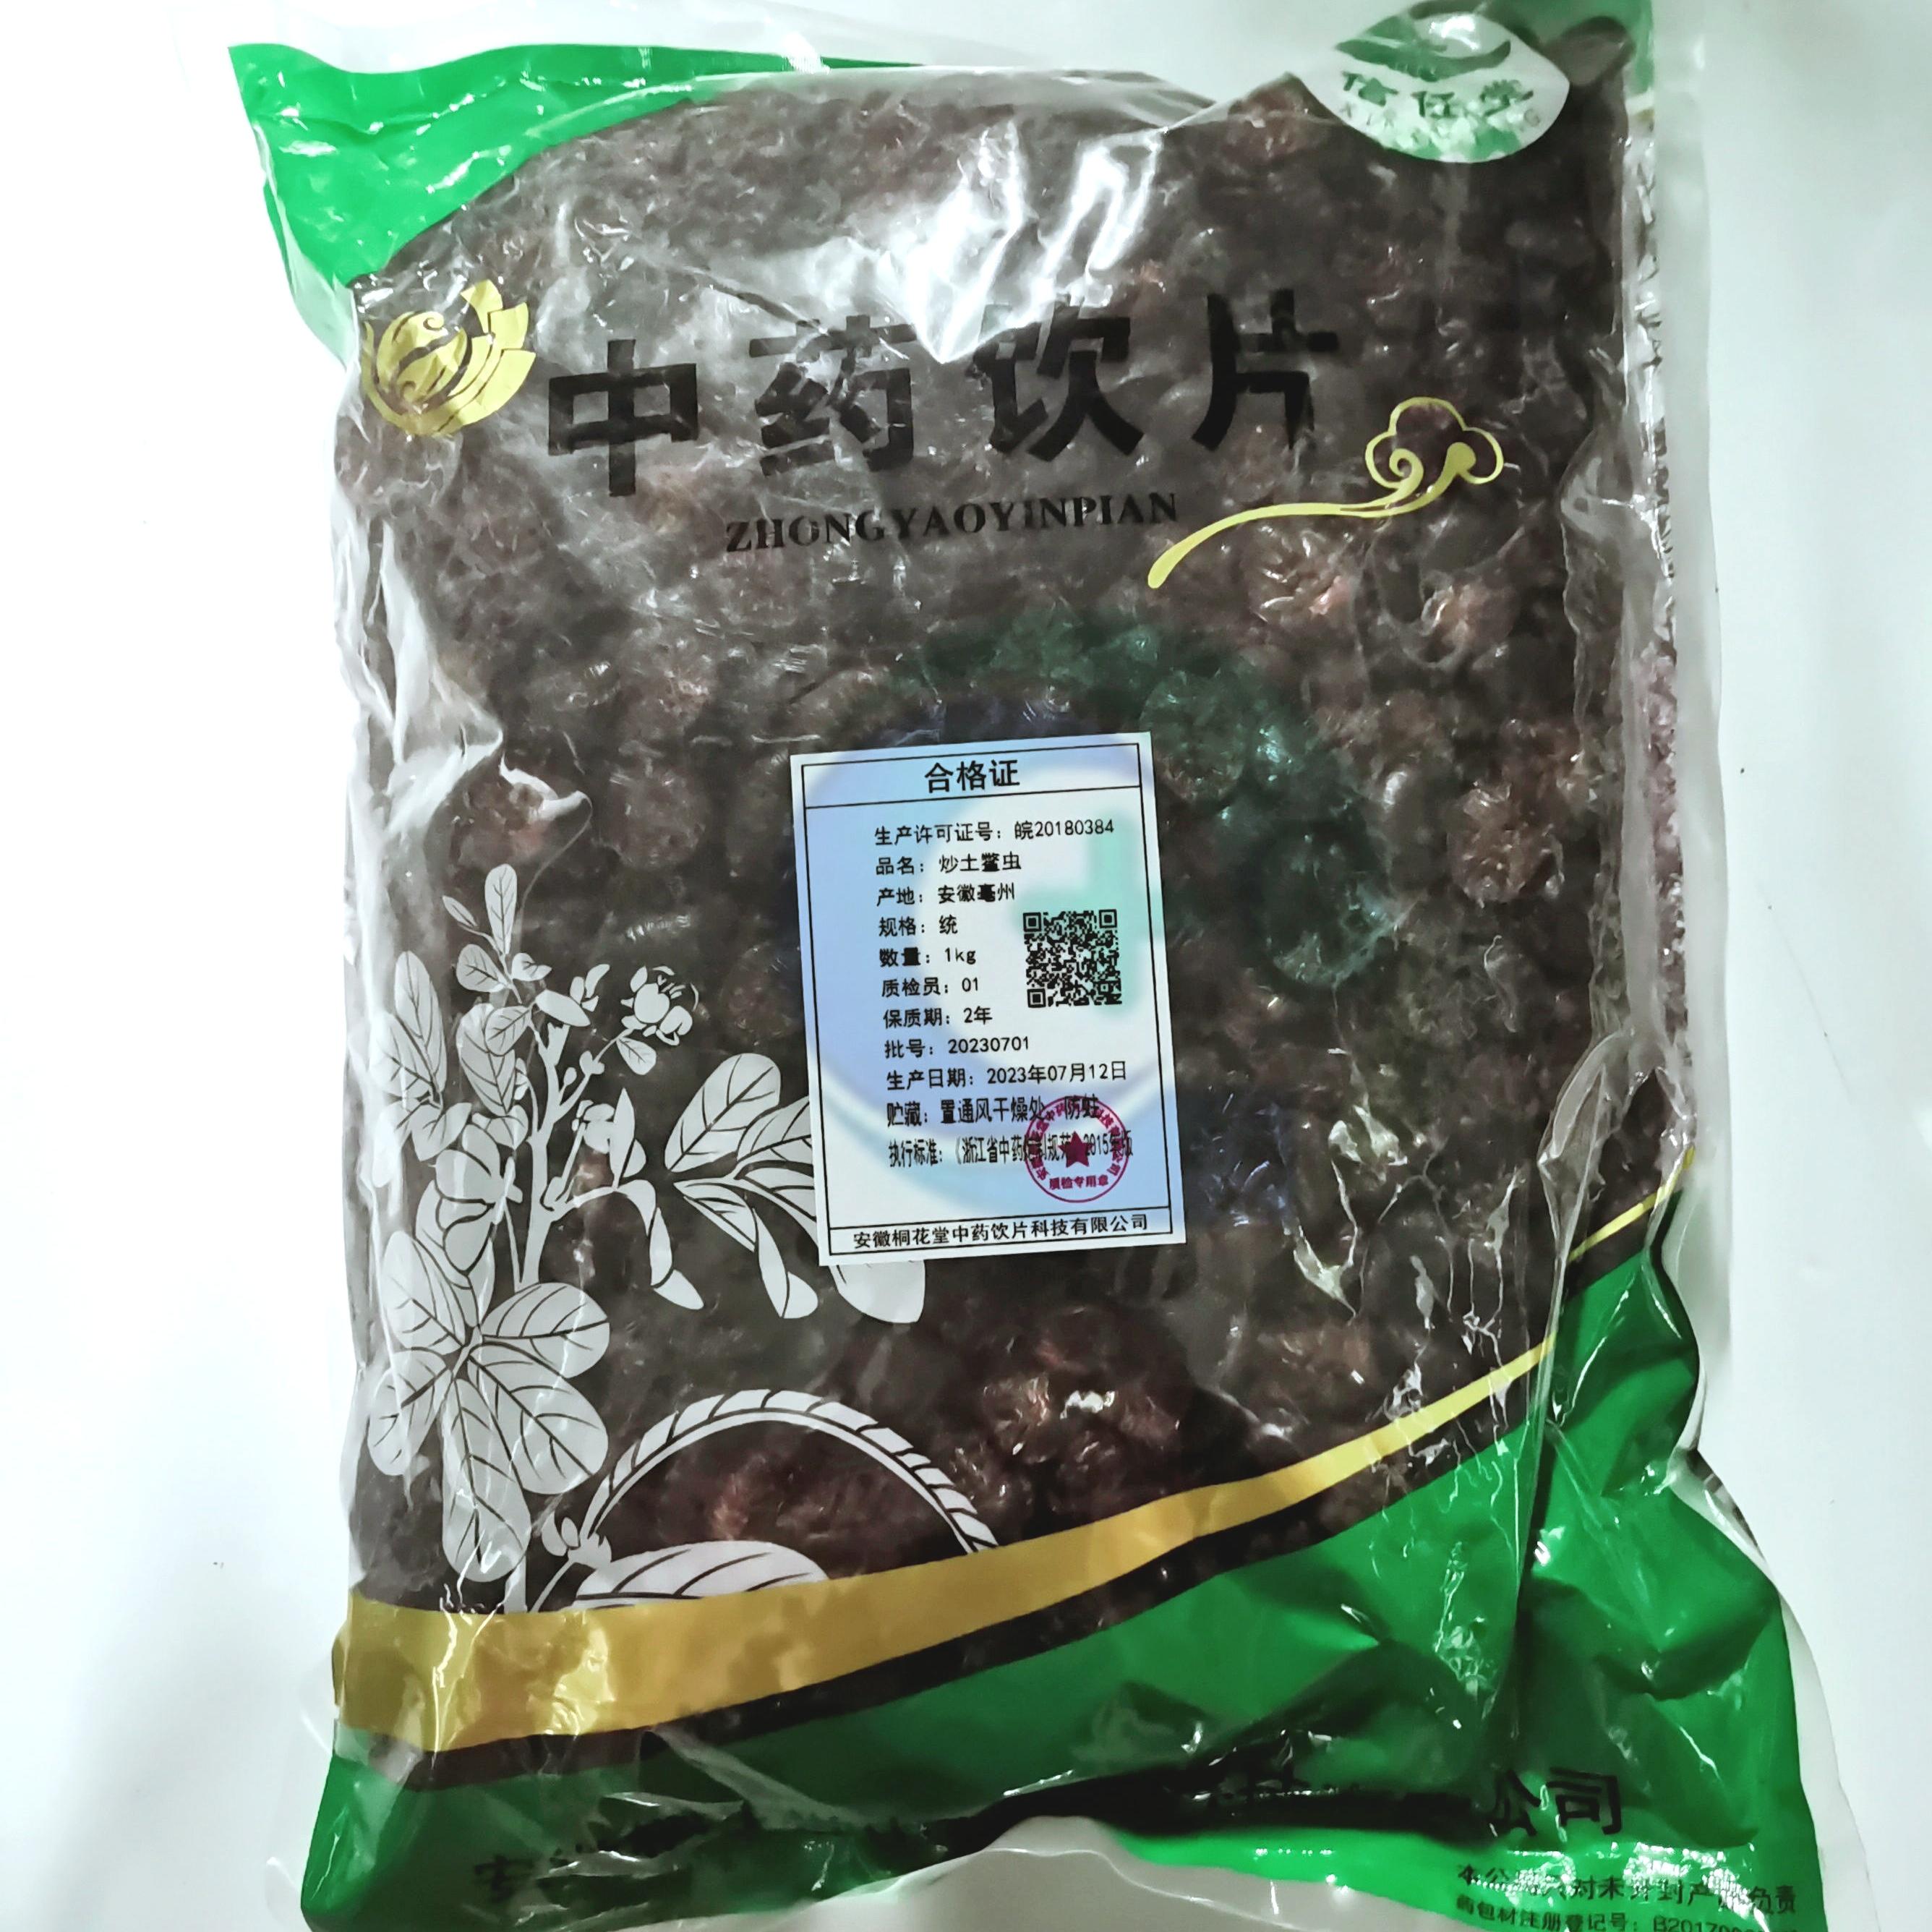 【】炒土鳖虫-统-1kg/袋-安徽桐花堂中药饮片科技有限公司